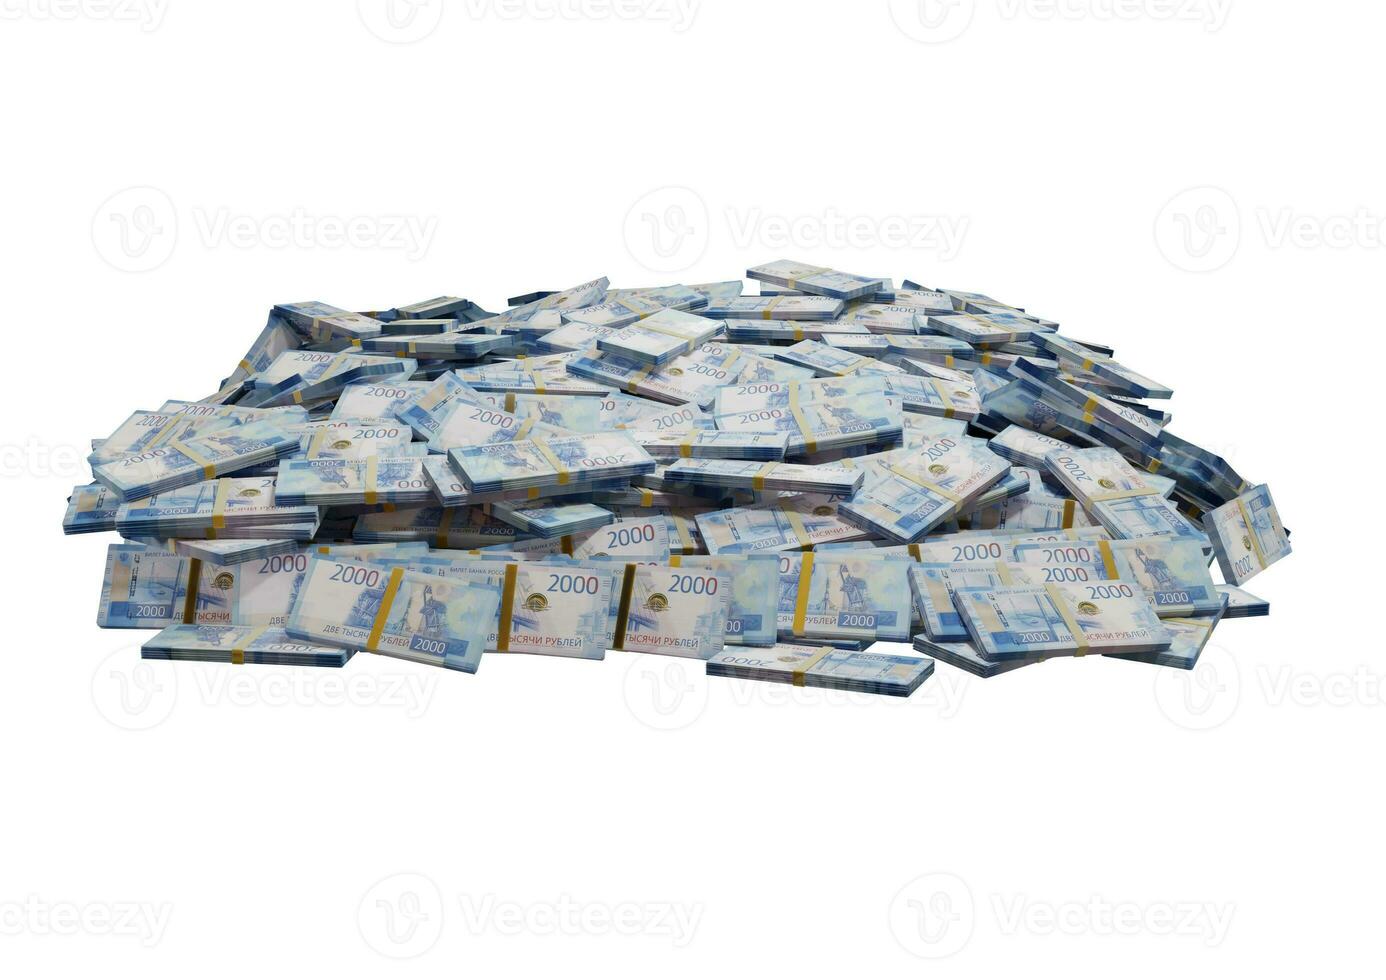 empilhar dinheiro russo ou notas de rublos da rússia espalhados em um fundo branco isolado o conceito de economia, finanças, plano de fundo, notícias, mídias sociais e textura de dinheiro renderização em 3d foto